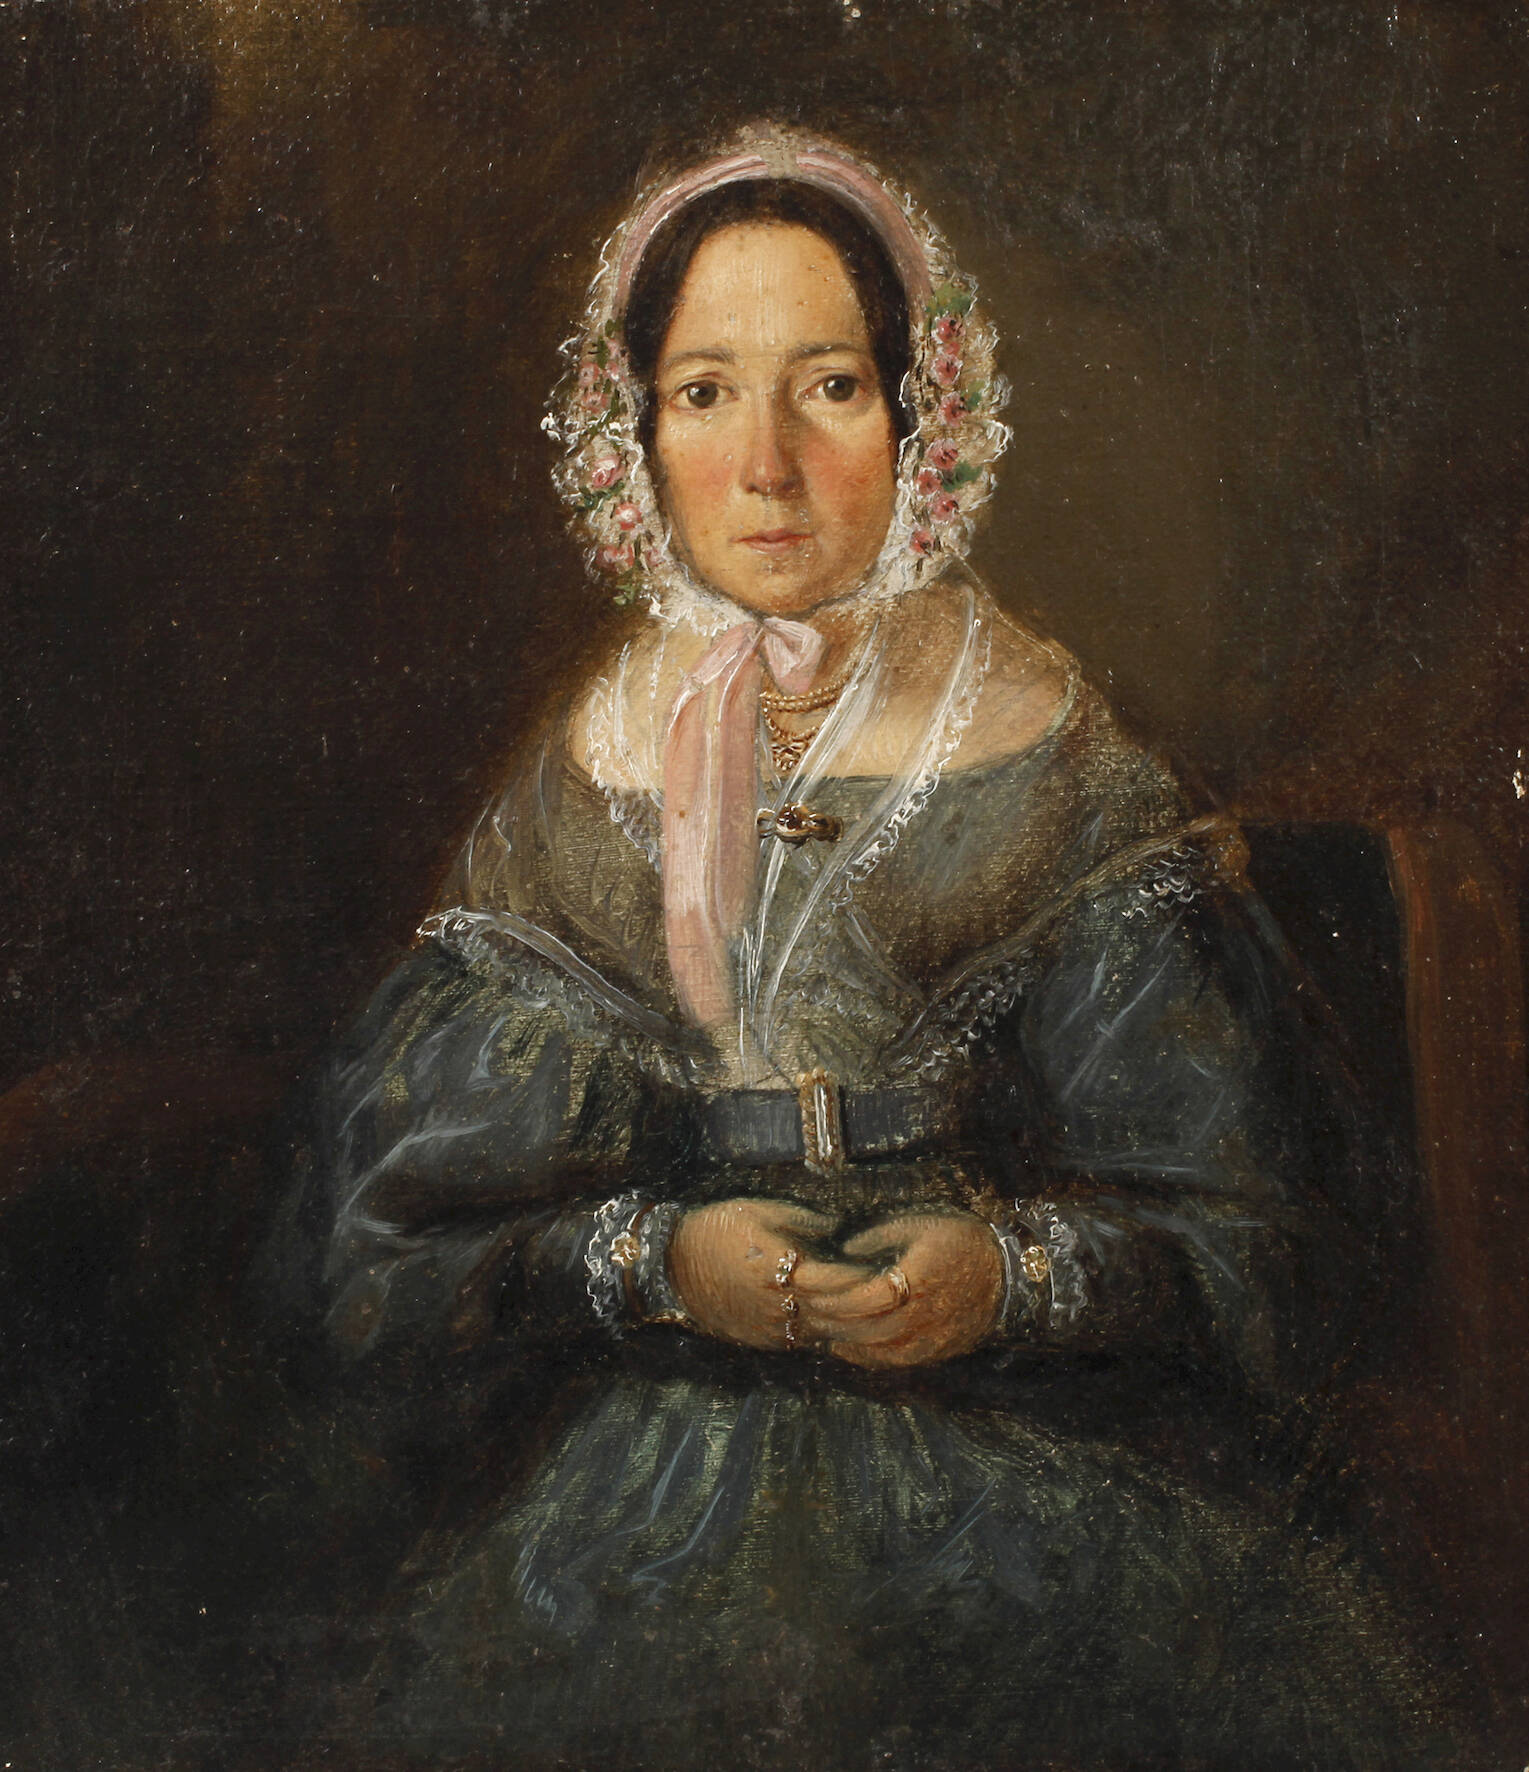 Damenportrait Biedermeier